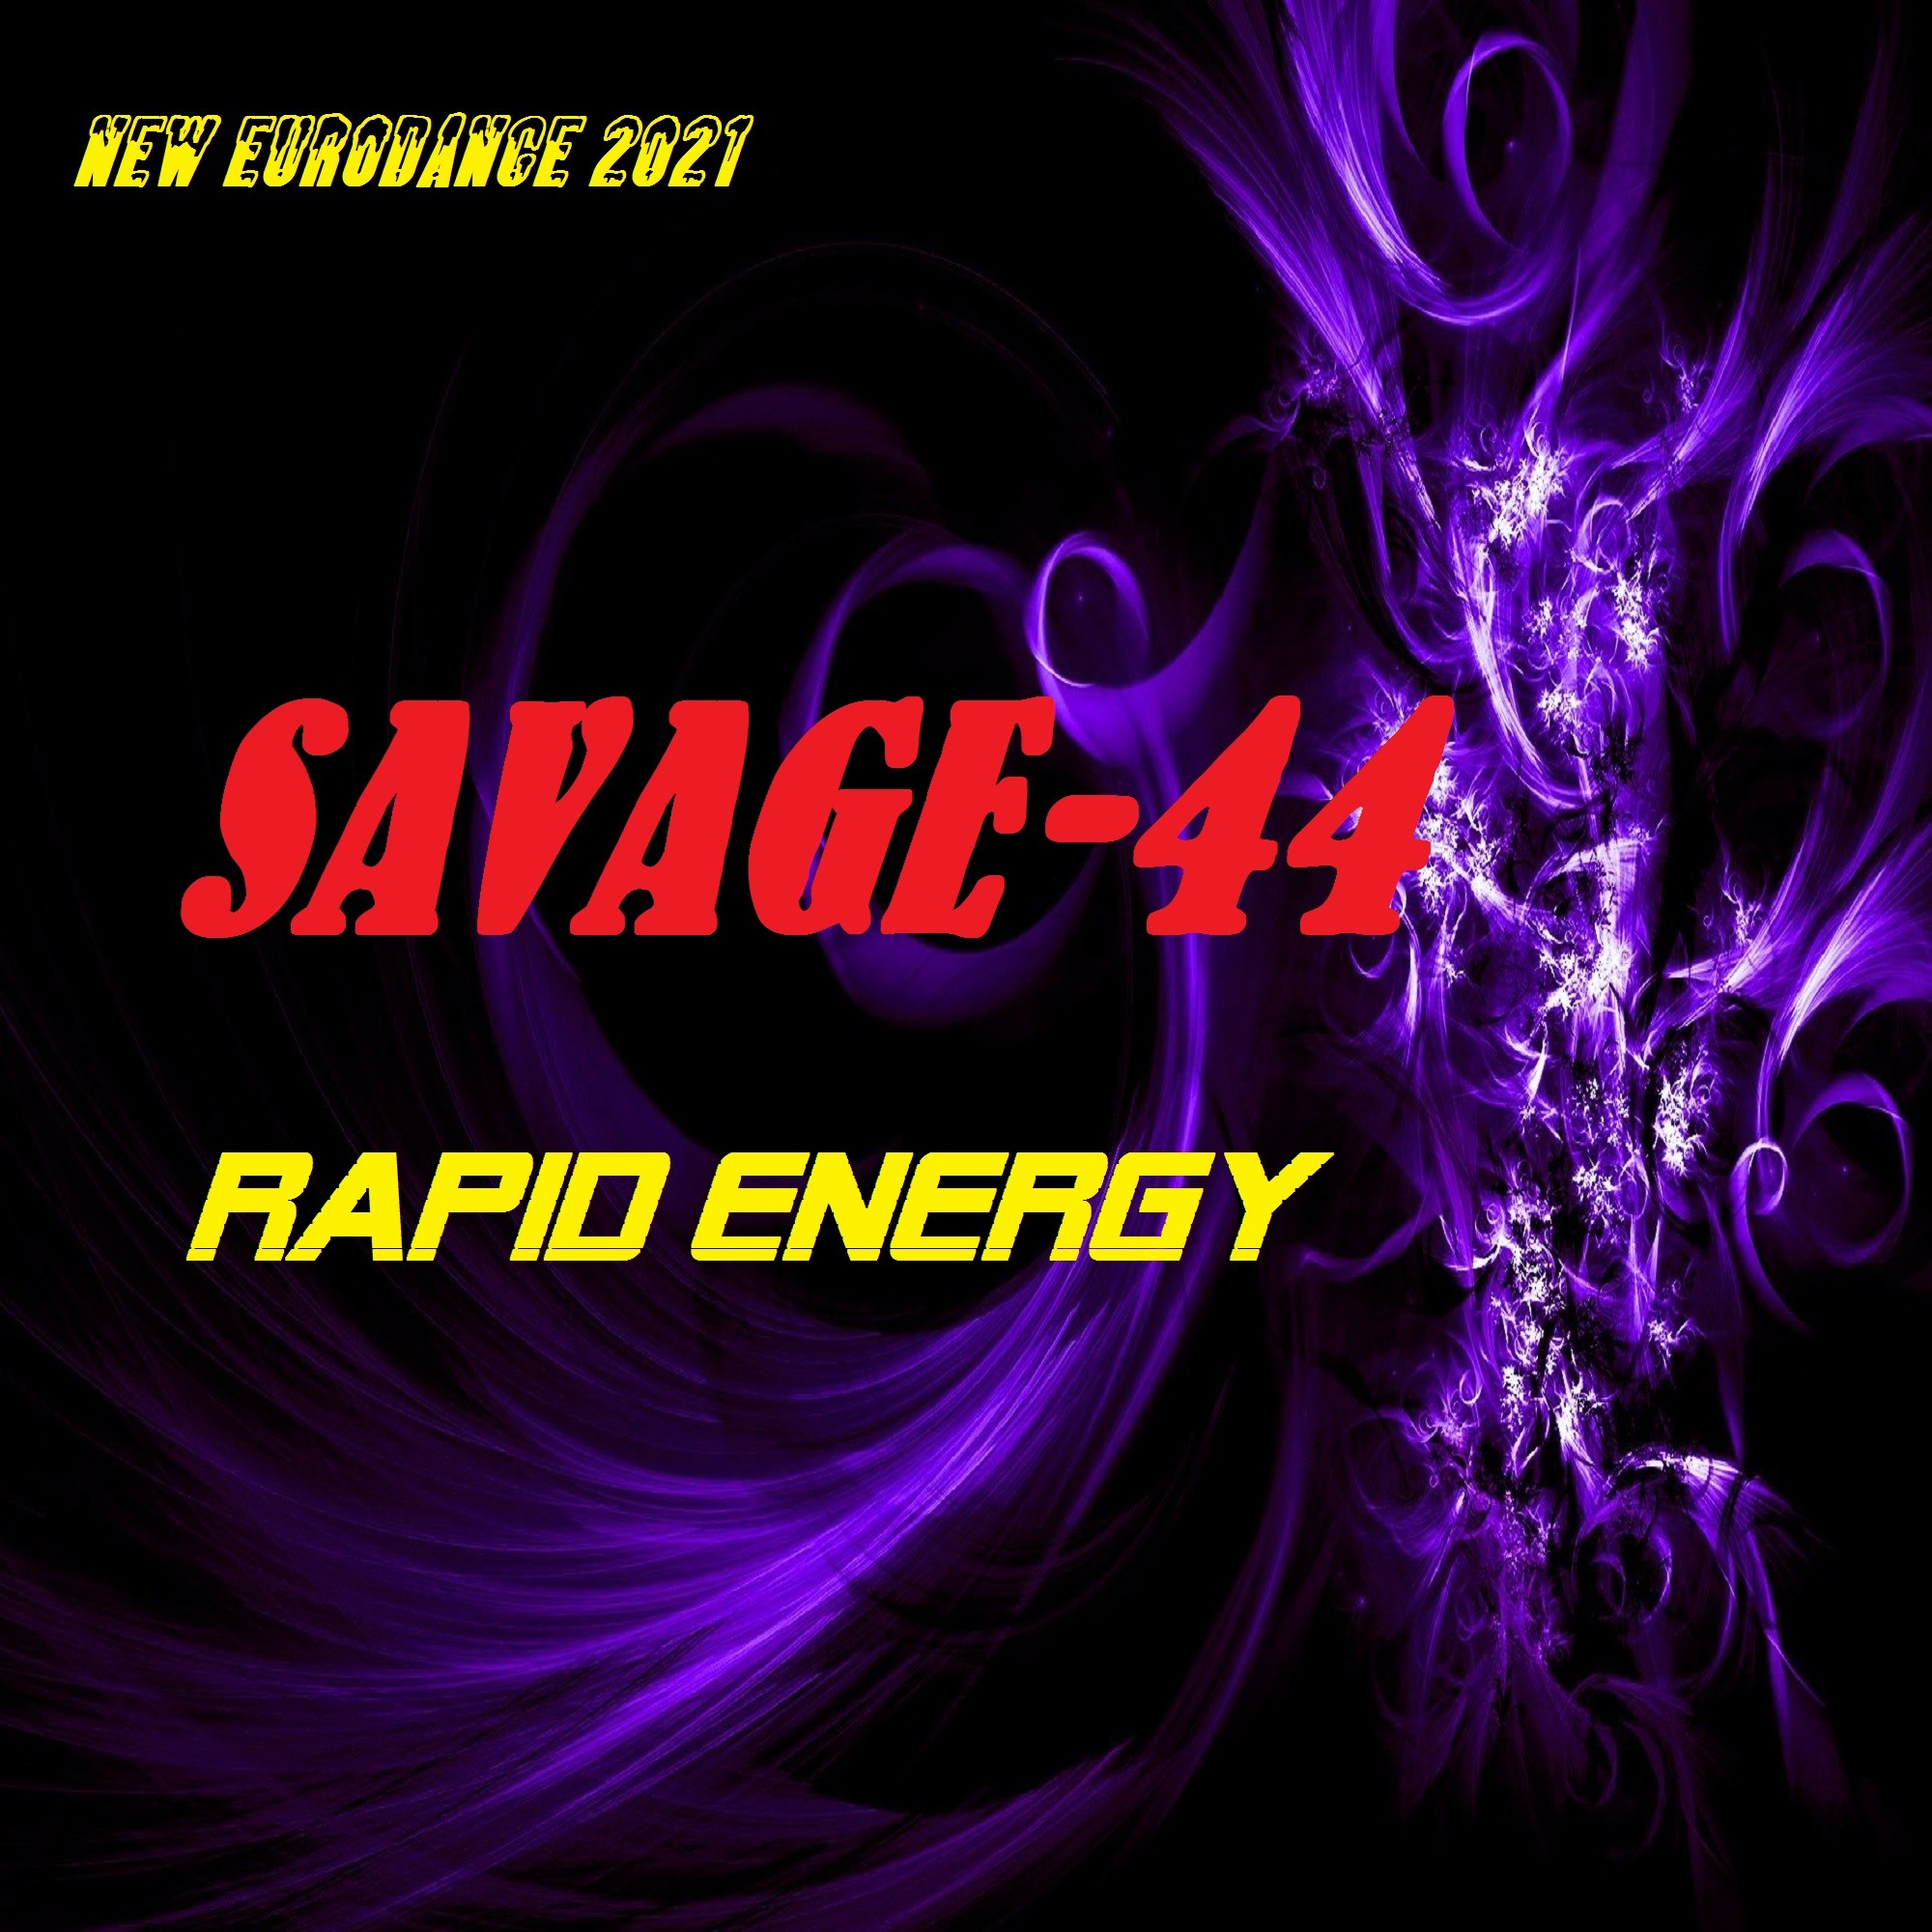 Savage 44 club drive new. Savage-44 - Rapid Energy (Eurodance Version). Savage -44 - Rapid Energy New Eurodance Music 2021. Savage 44. Саваж 44 Евроданс.